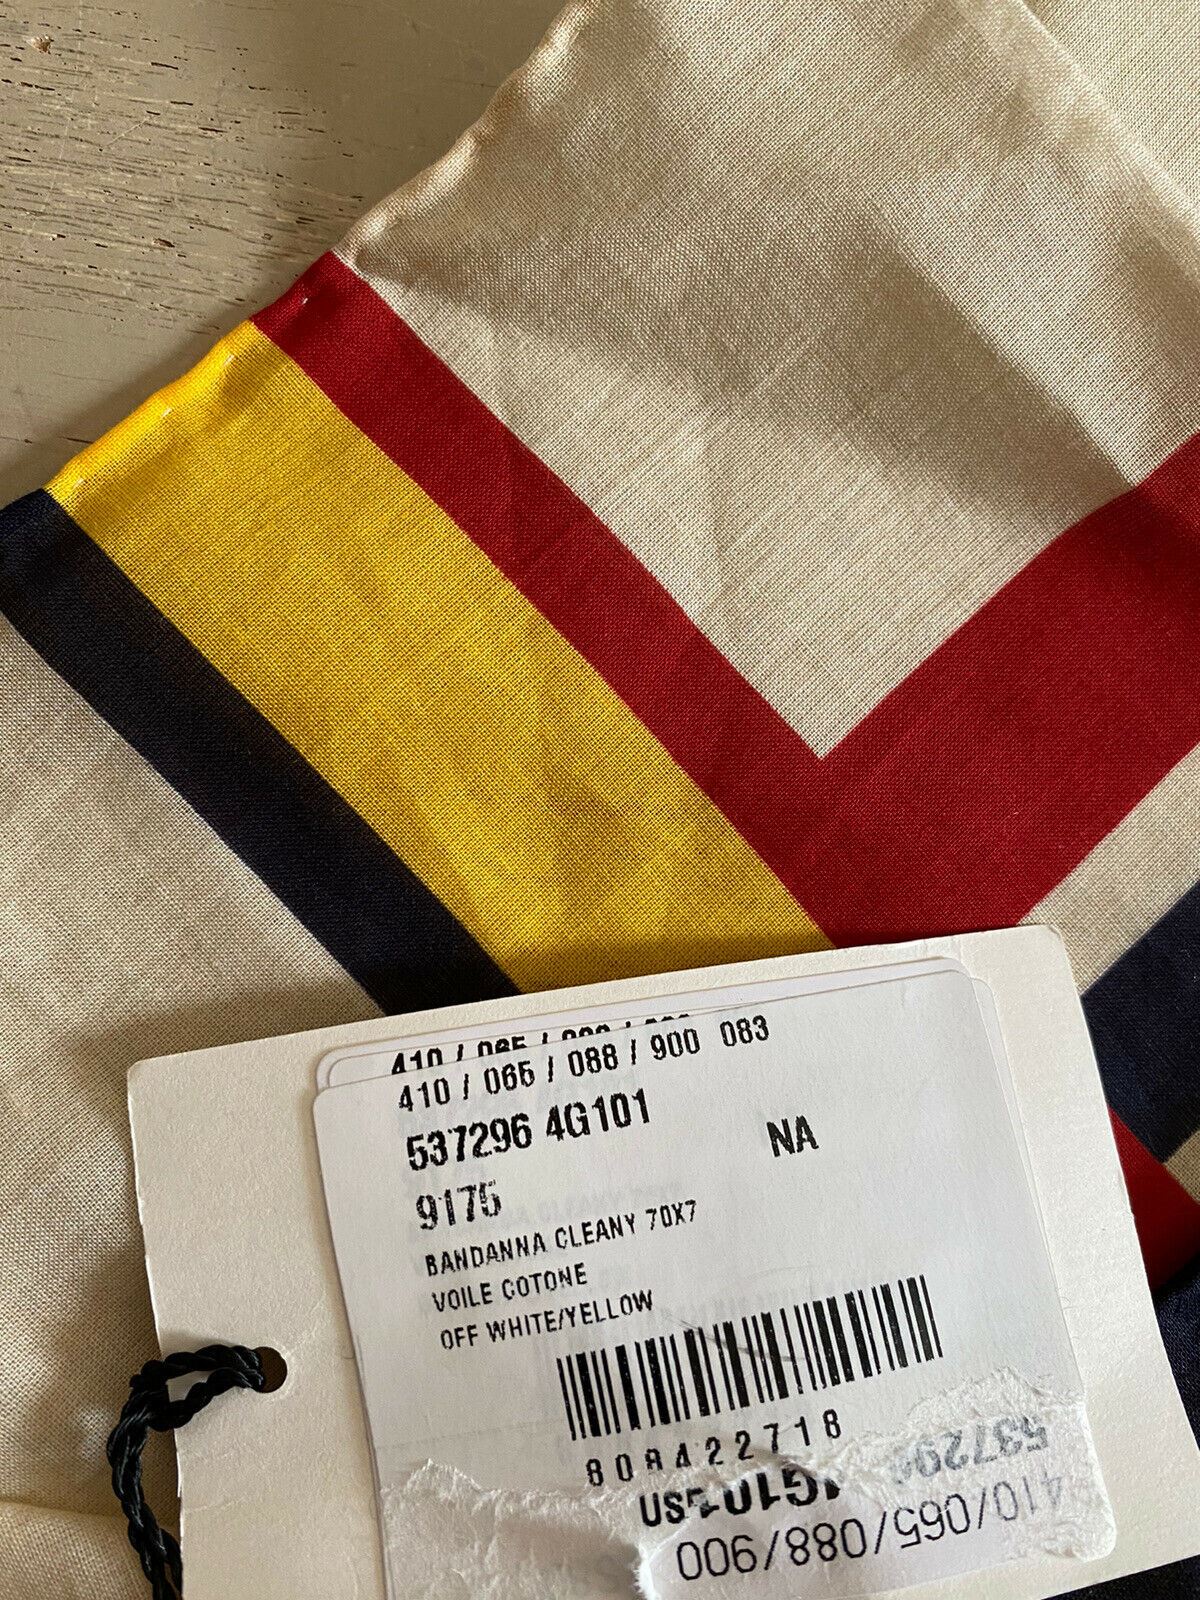 Новый женский шарф-бандана Gucci белого/желтого/красного цвета, Италия